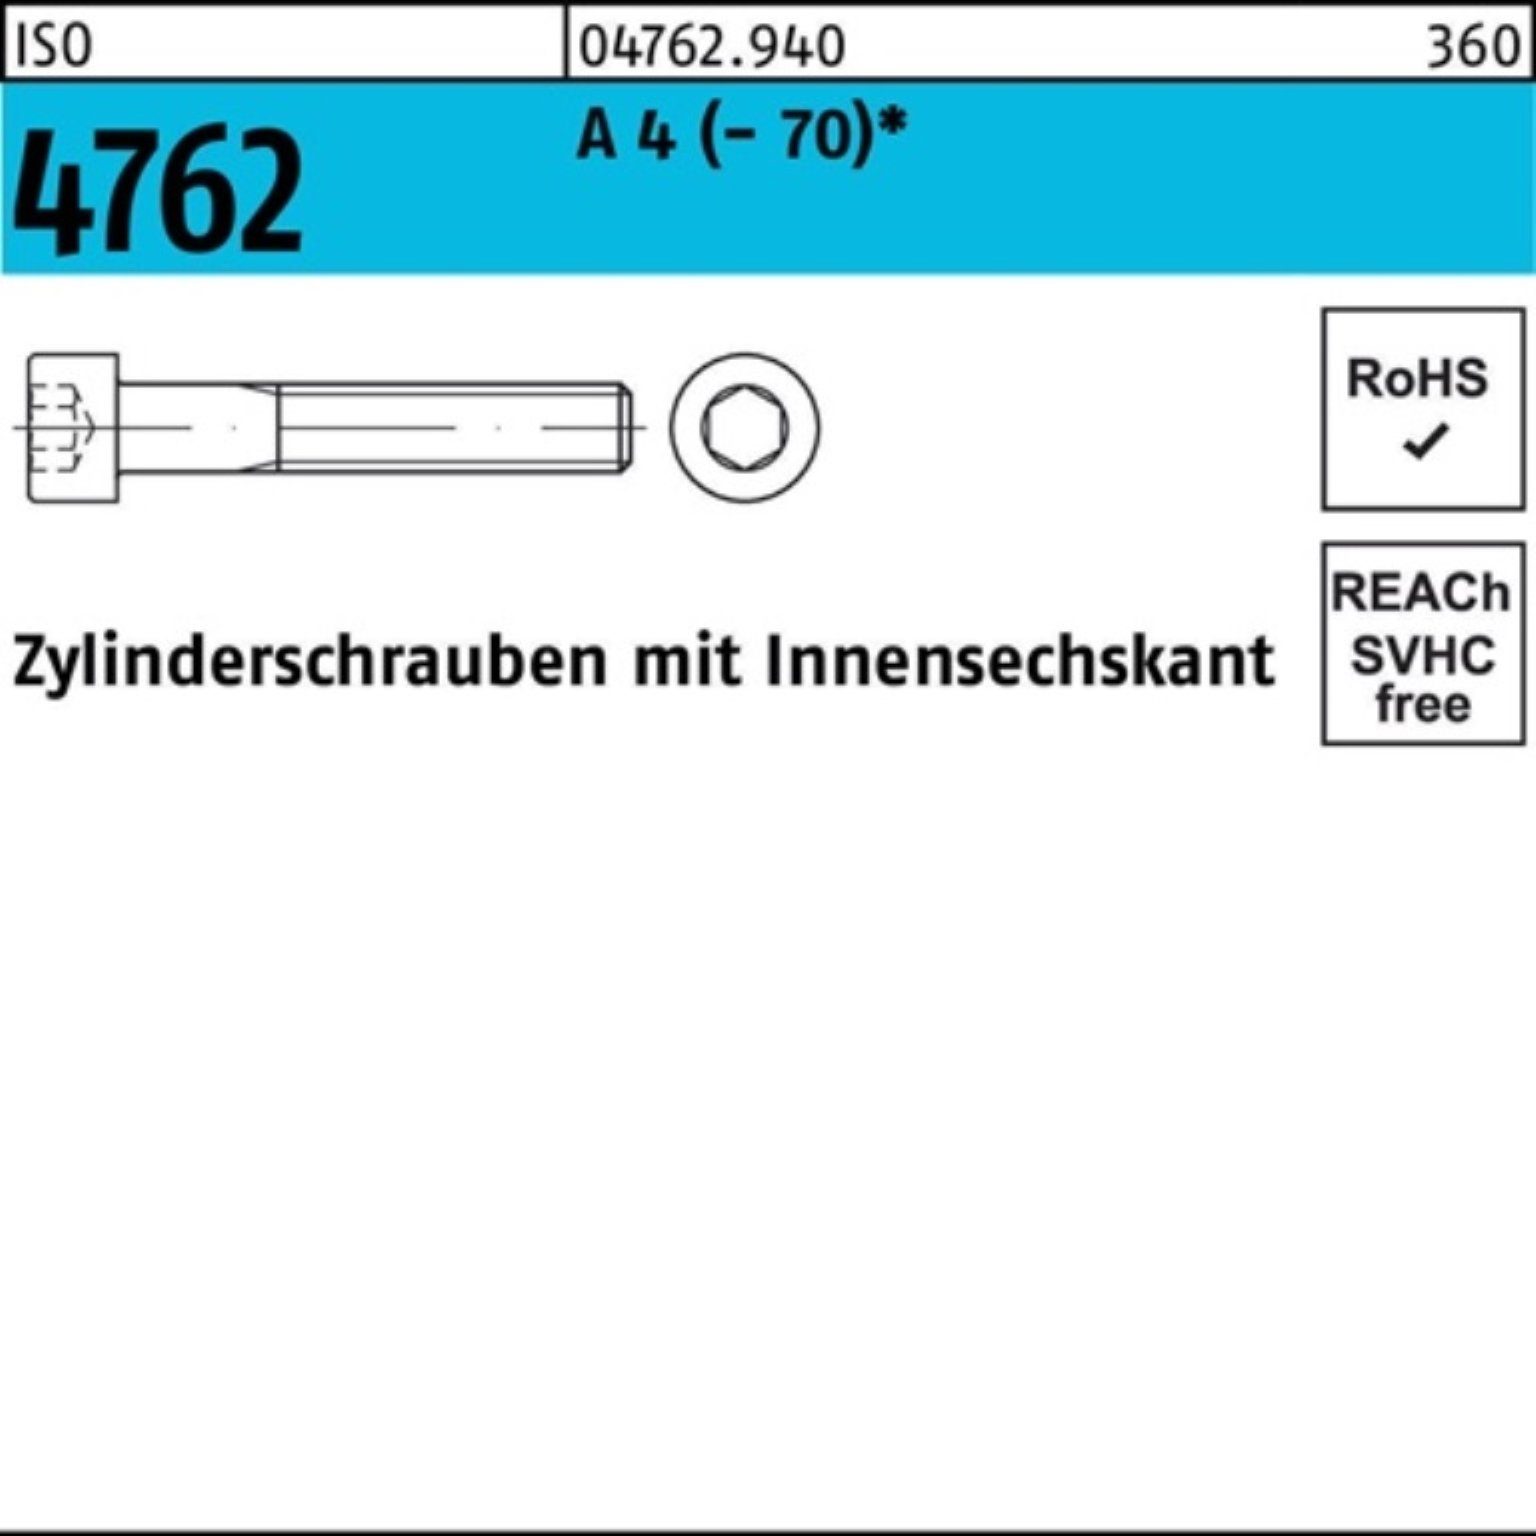 Zylinderschraube 100er 100 Reyher Innen-6kt 4762 A M2,5x 4 Pack Zylinderschraube 10 Stück ISO